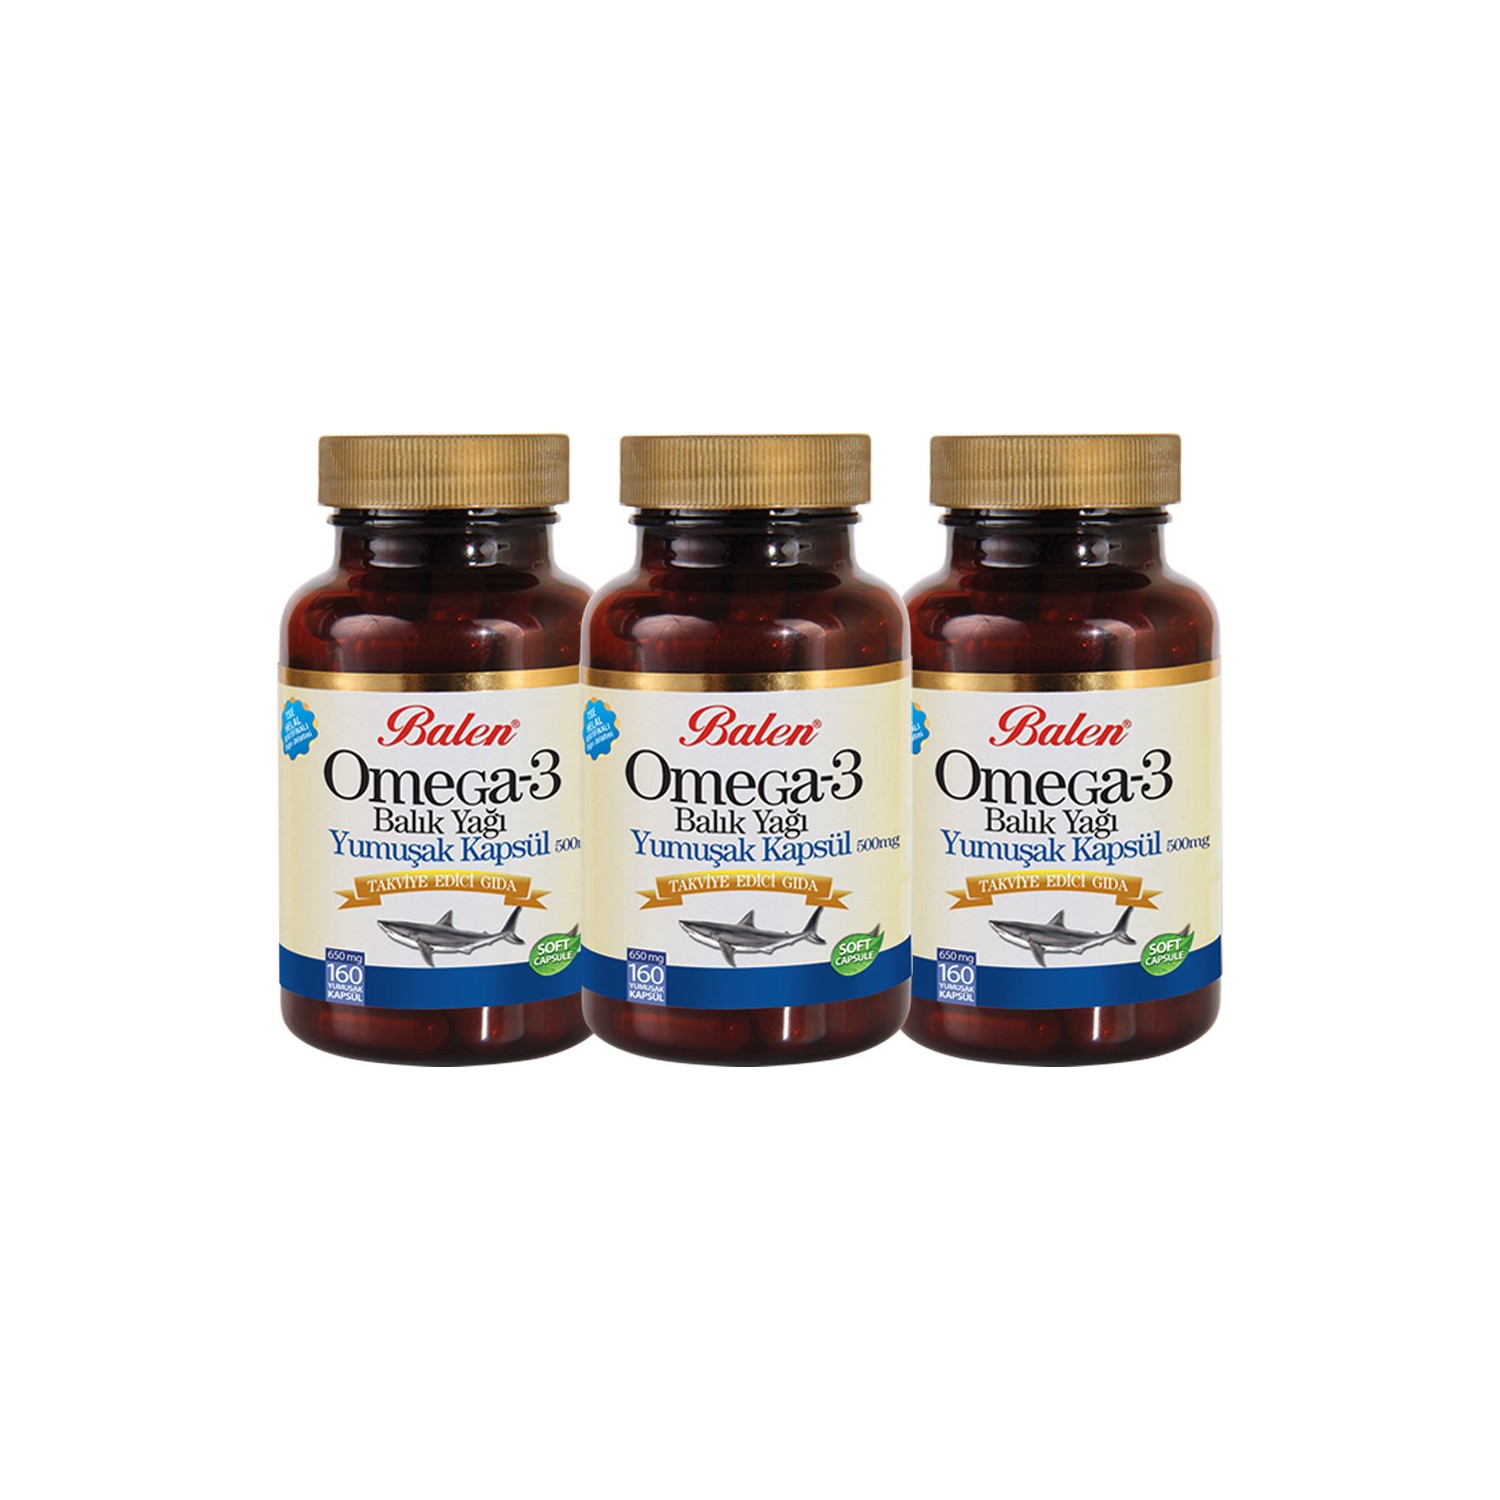 капсулы uniforce omega 3 6 9 1200 mg 120 шт Рыбий жир Balen Omega 3, 160 капсул, 500 мг, 3 штуки